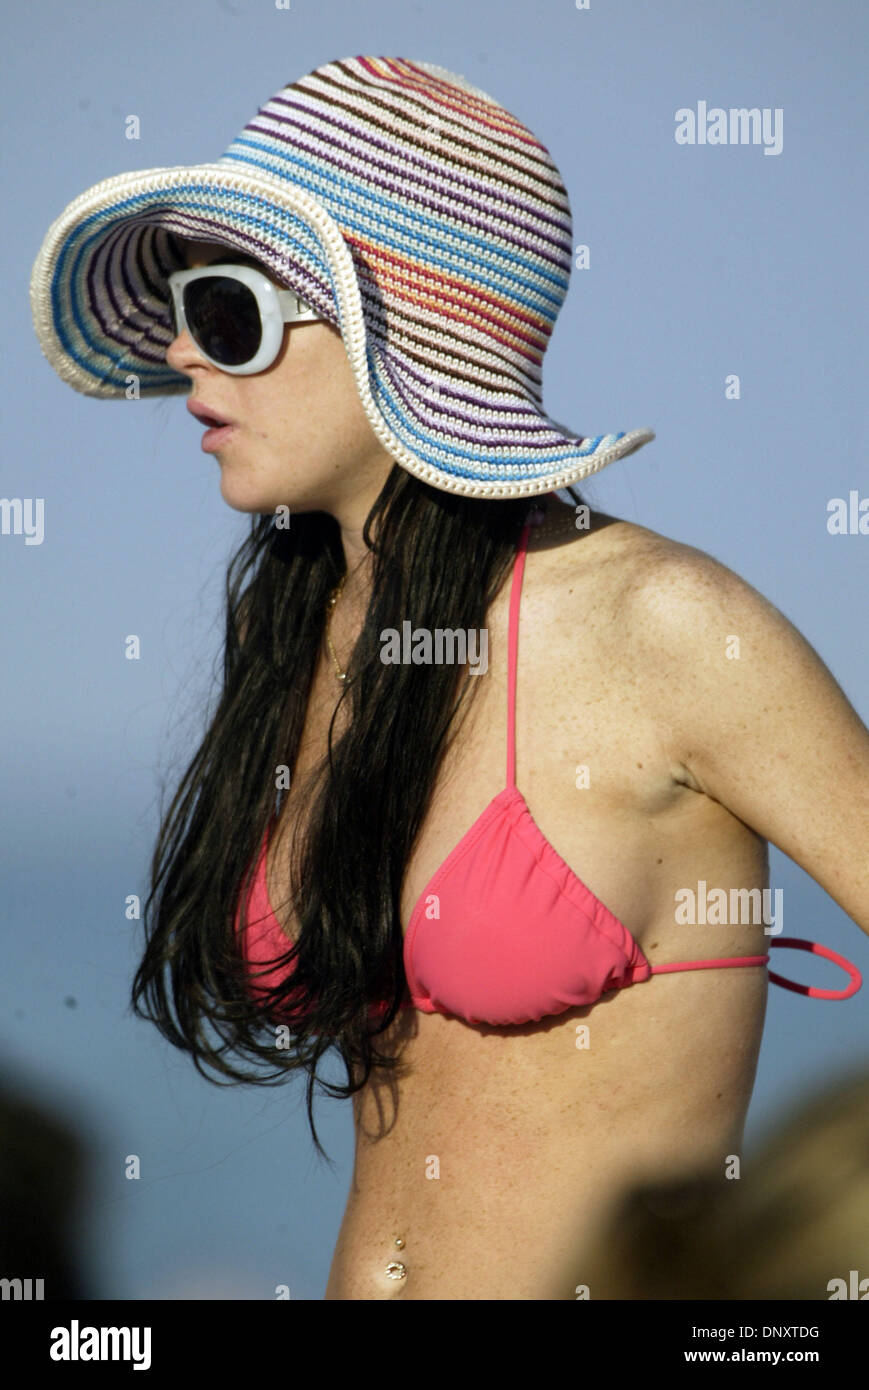 Dec 30, 2005 ; Miami Beach, FL, USA ; l'actrice LINDSAY LOHAN est vu ici à  prendre le soleil à Miami Beach, Floride, le vendredi 30 décembre 2005.  Elle portait des lunettes